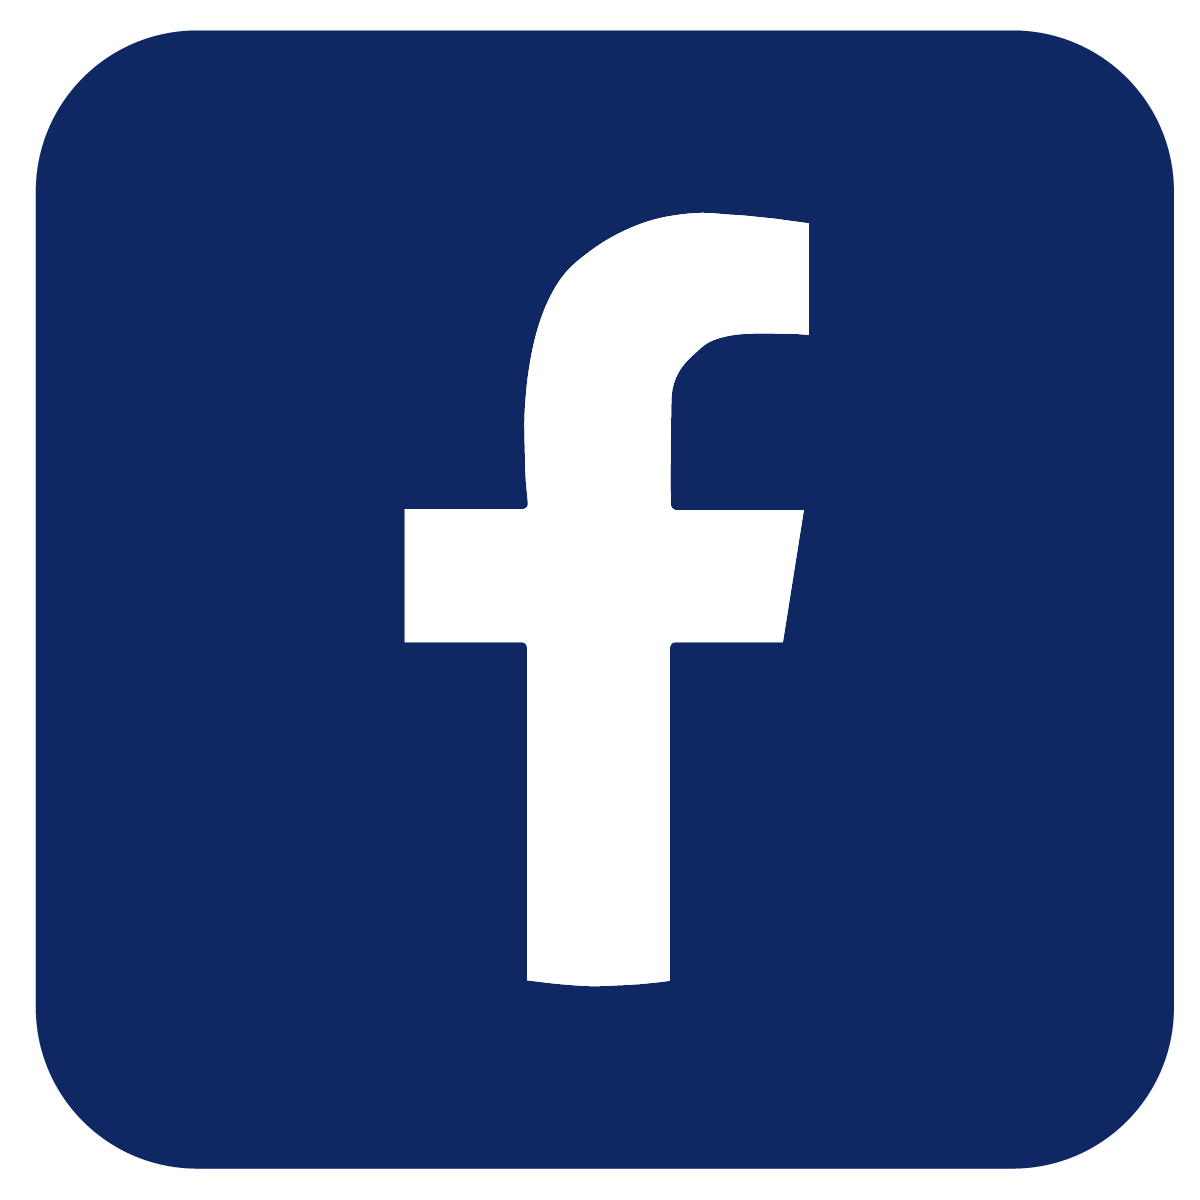 Eierund Social Media Facebook